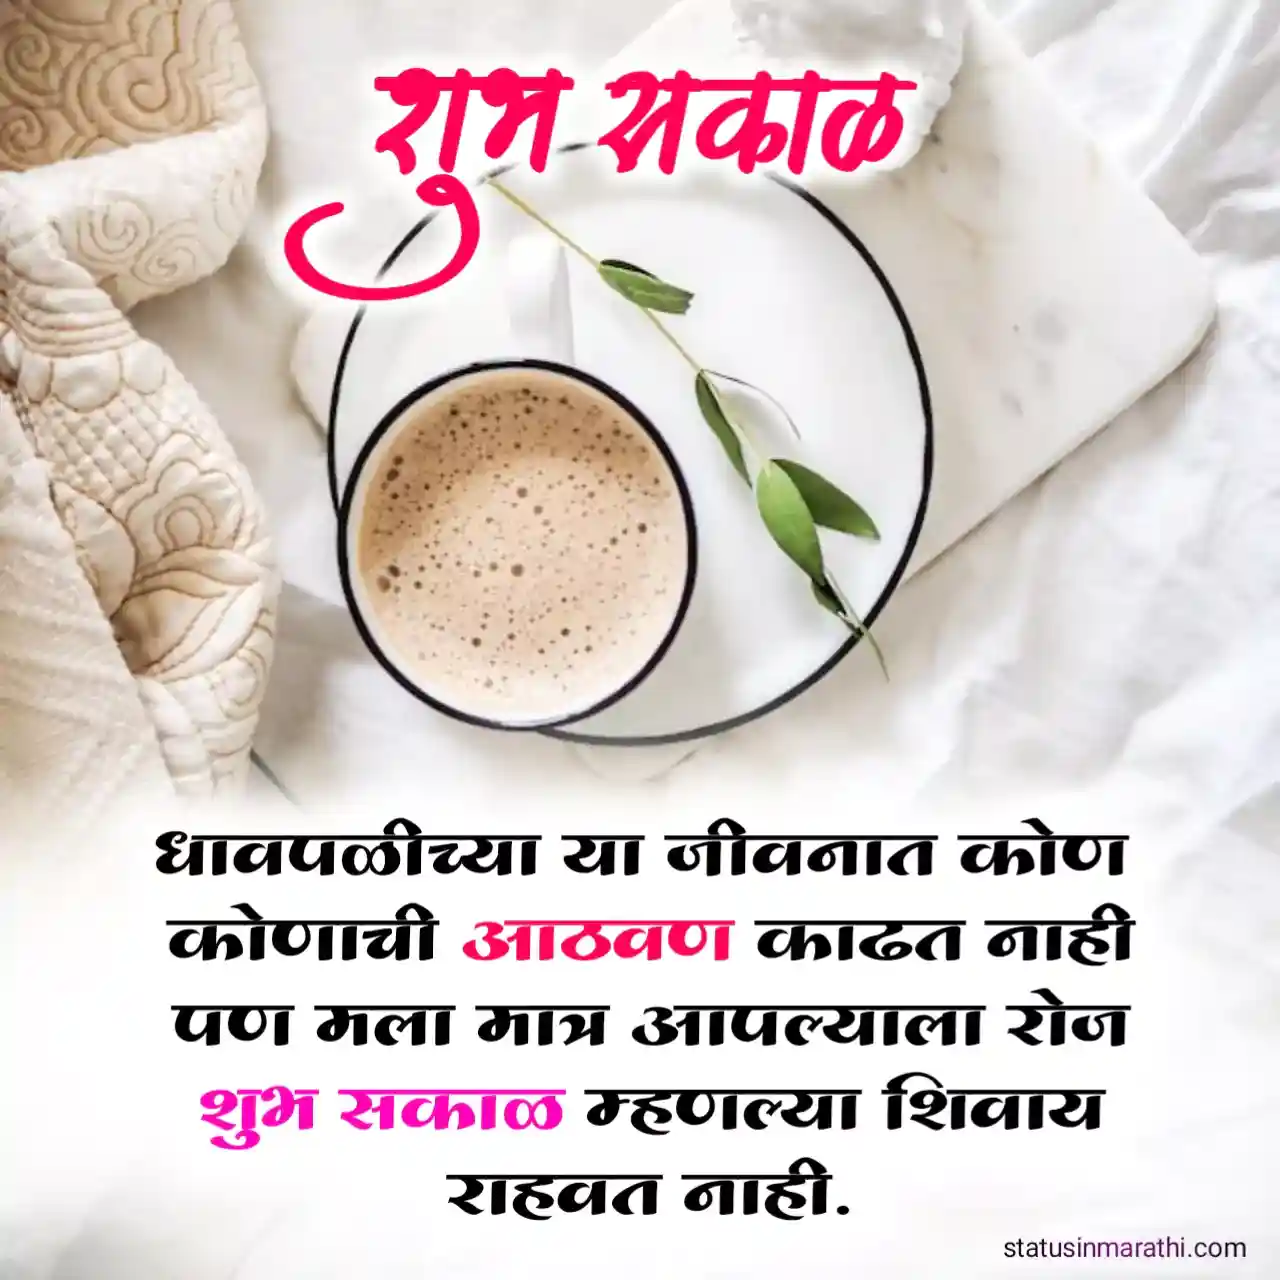 Good morning wishes in marathi